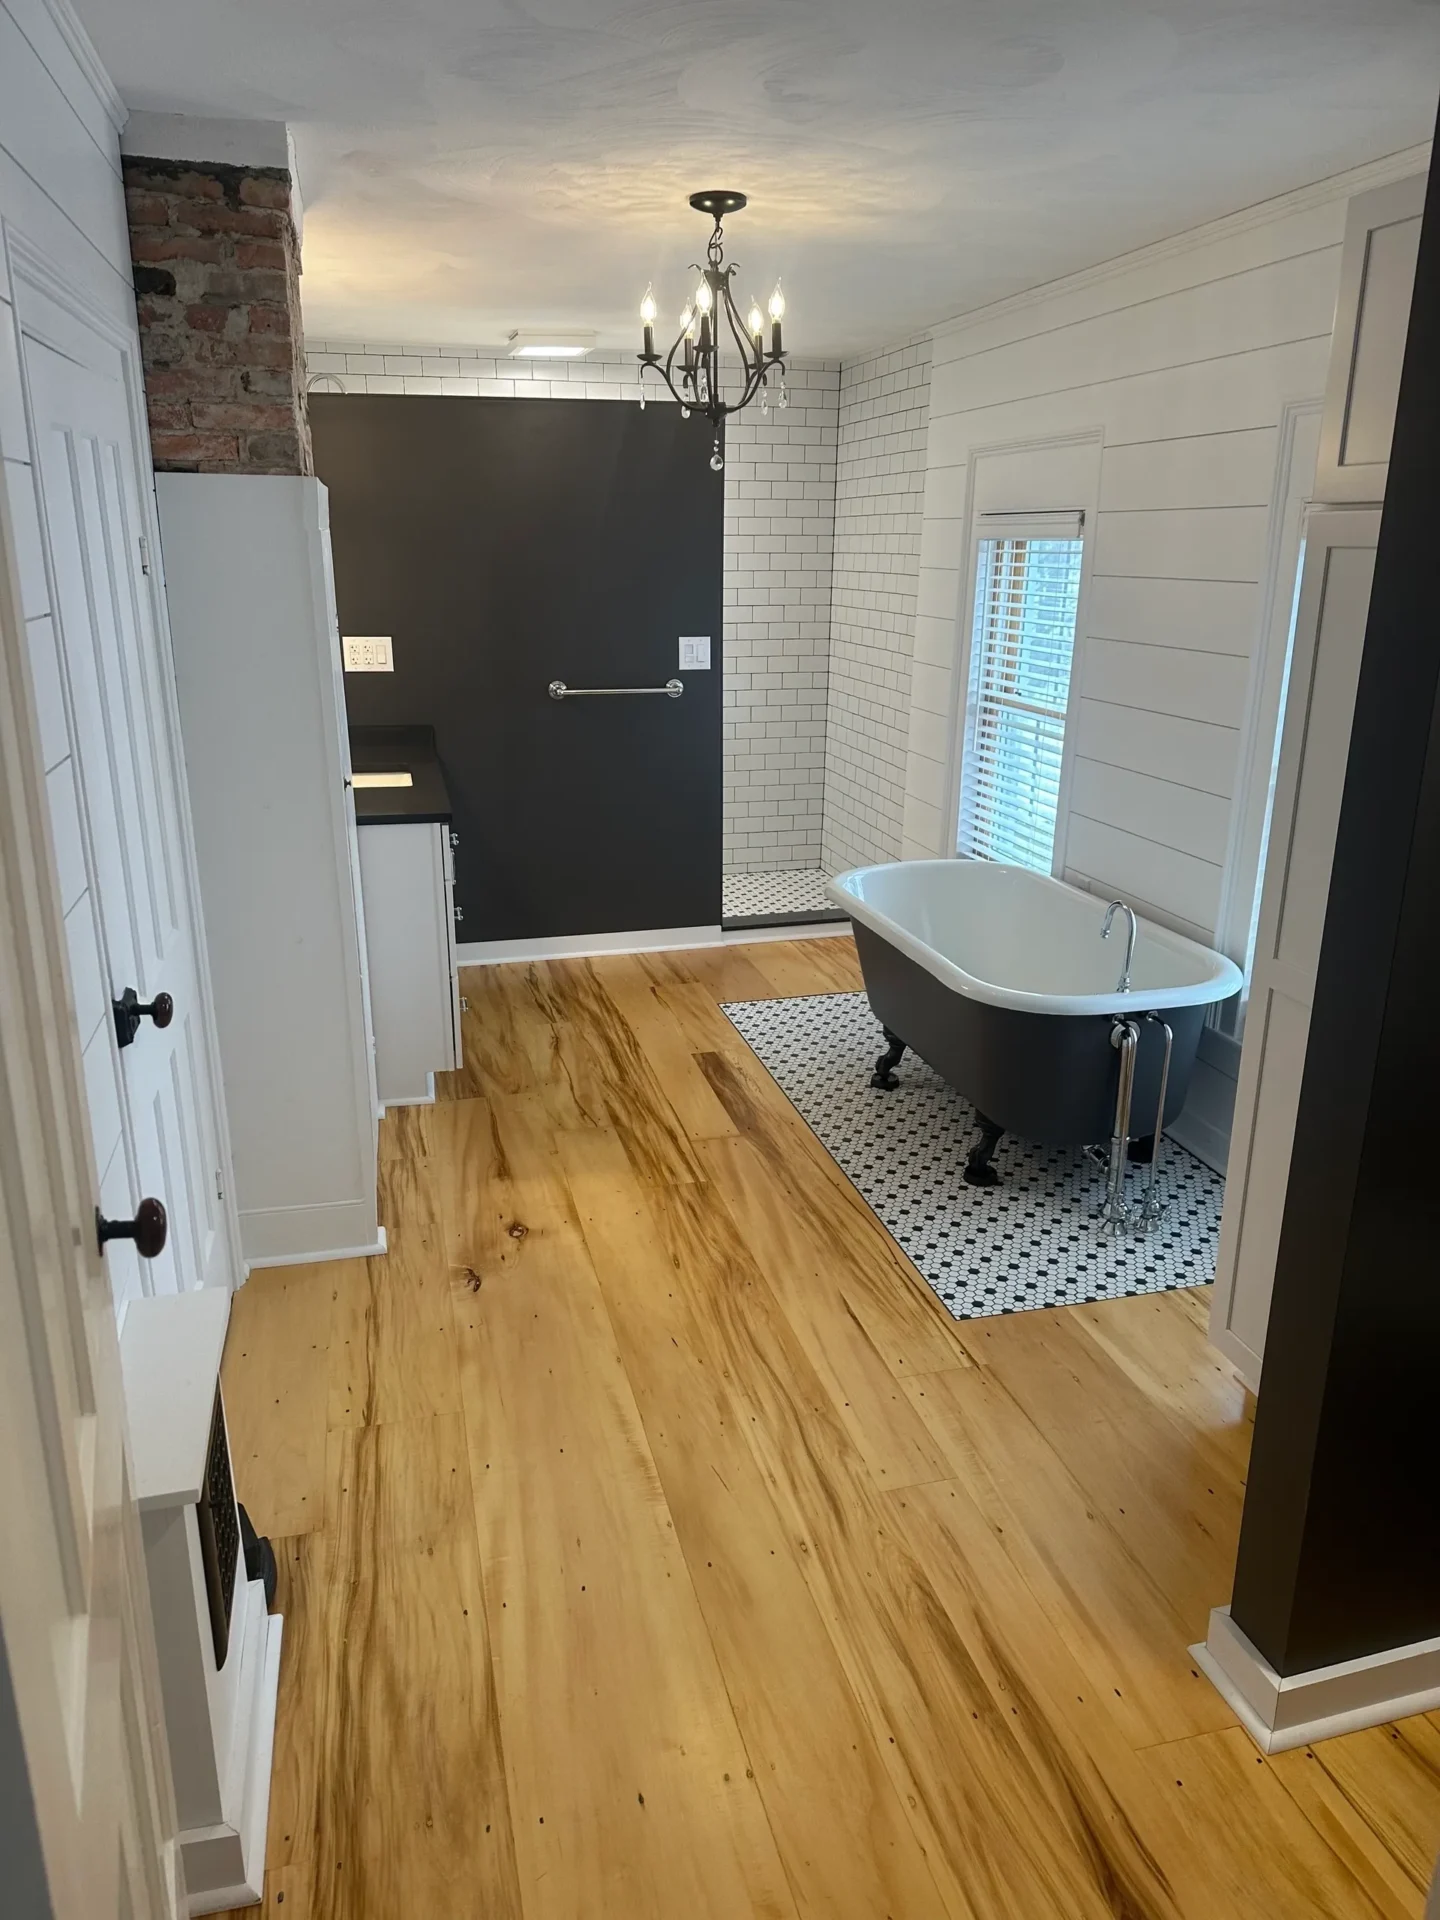 A bathroom with hardwood floors and a bathtub.